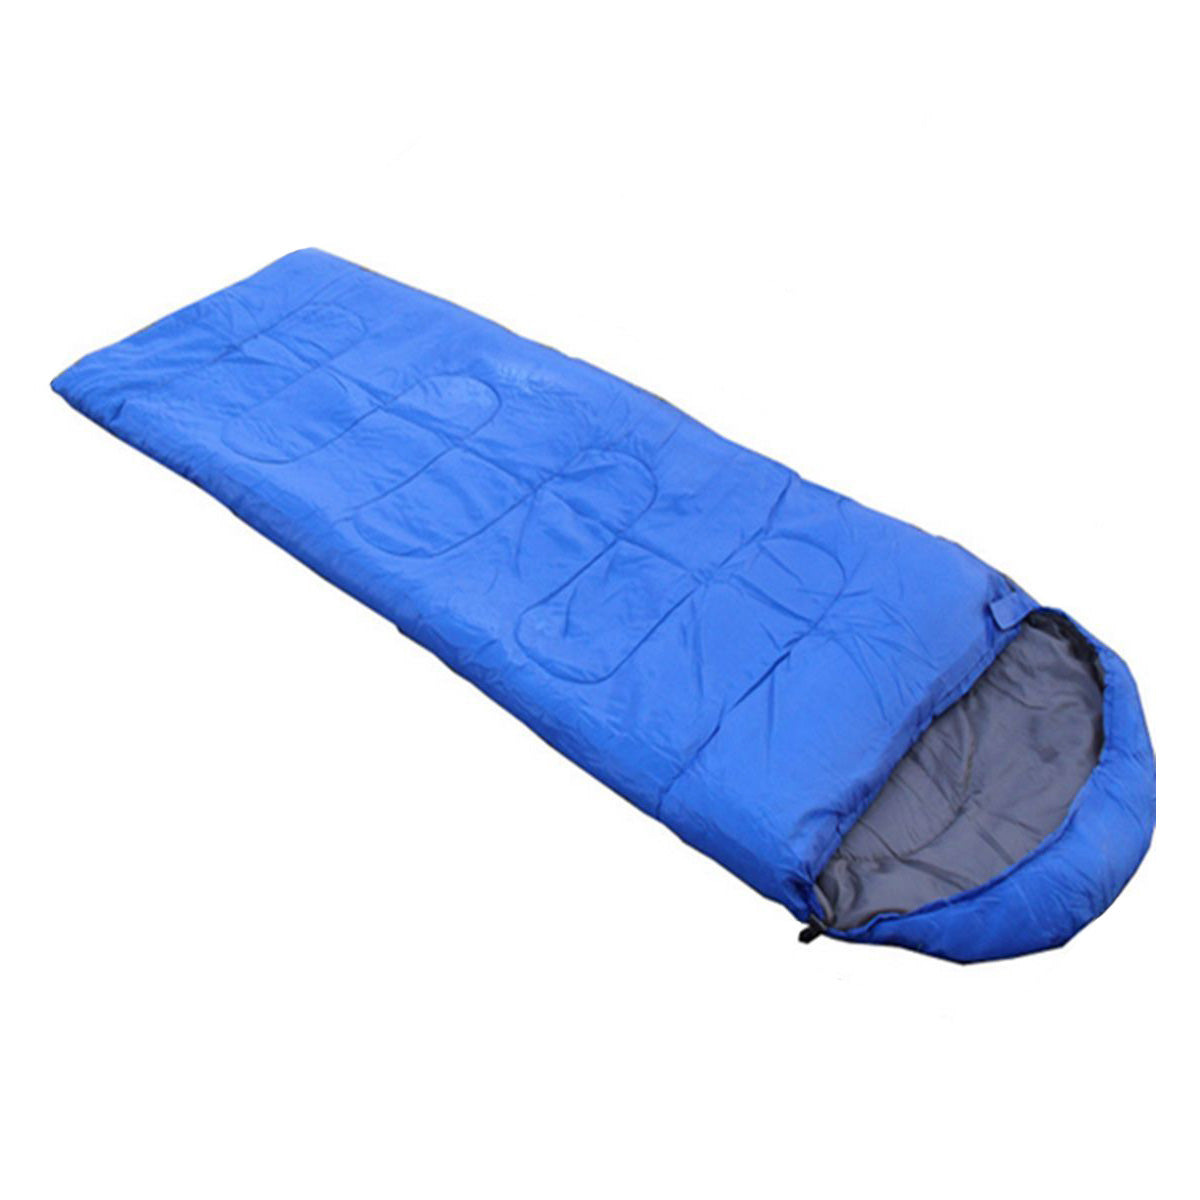 Waterproof Travel Sleeping Bag